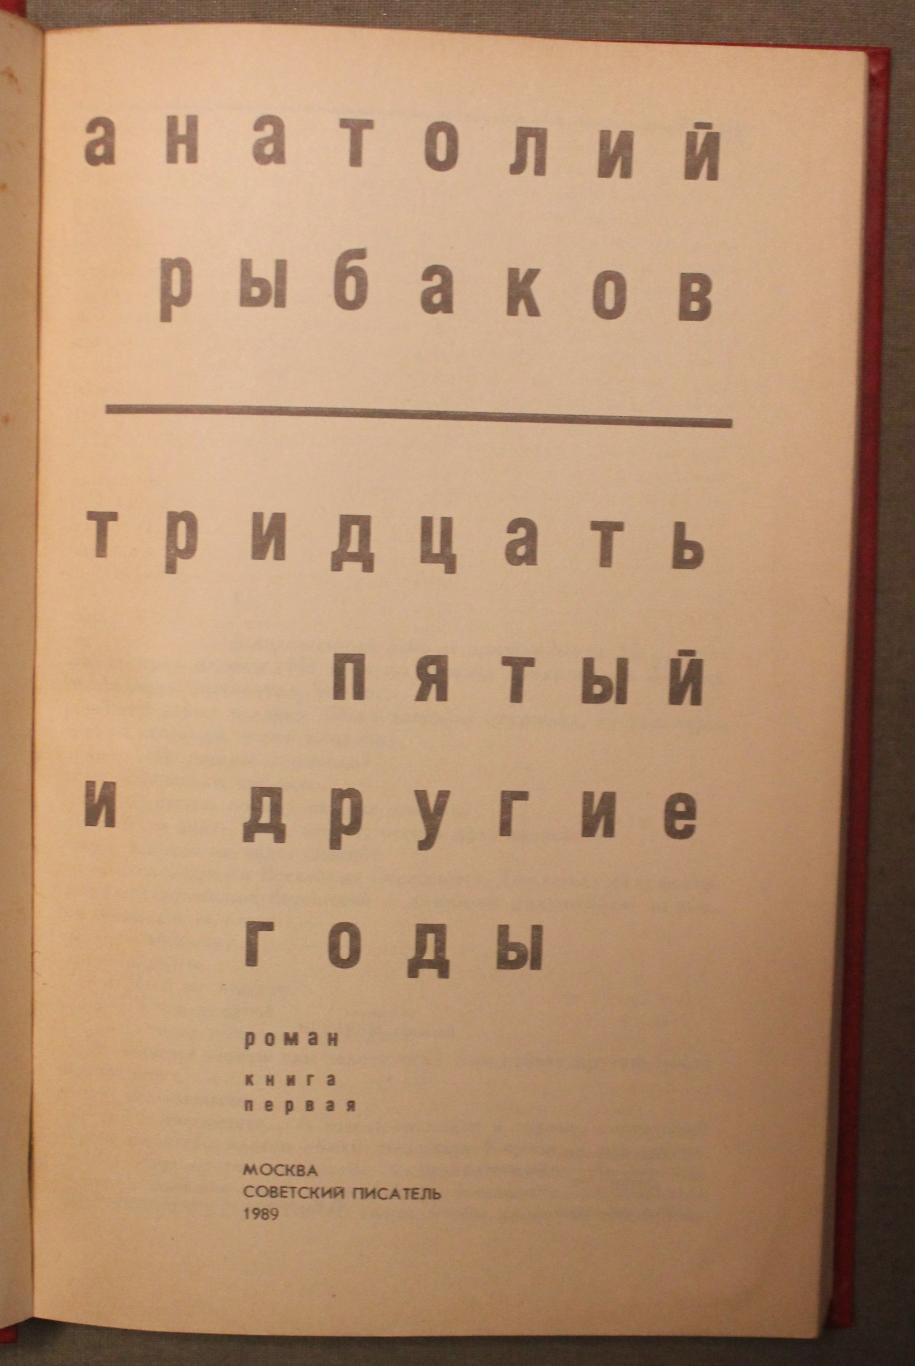 Анатолий Рыбаков Тридцать пятый и другие годы изд. 1989 2